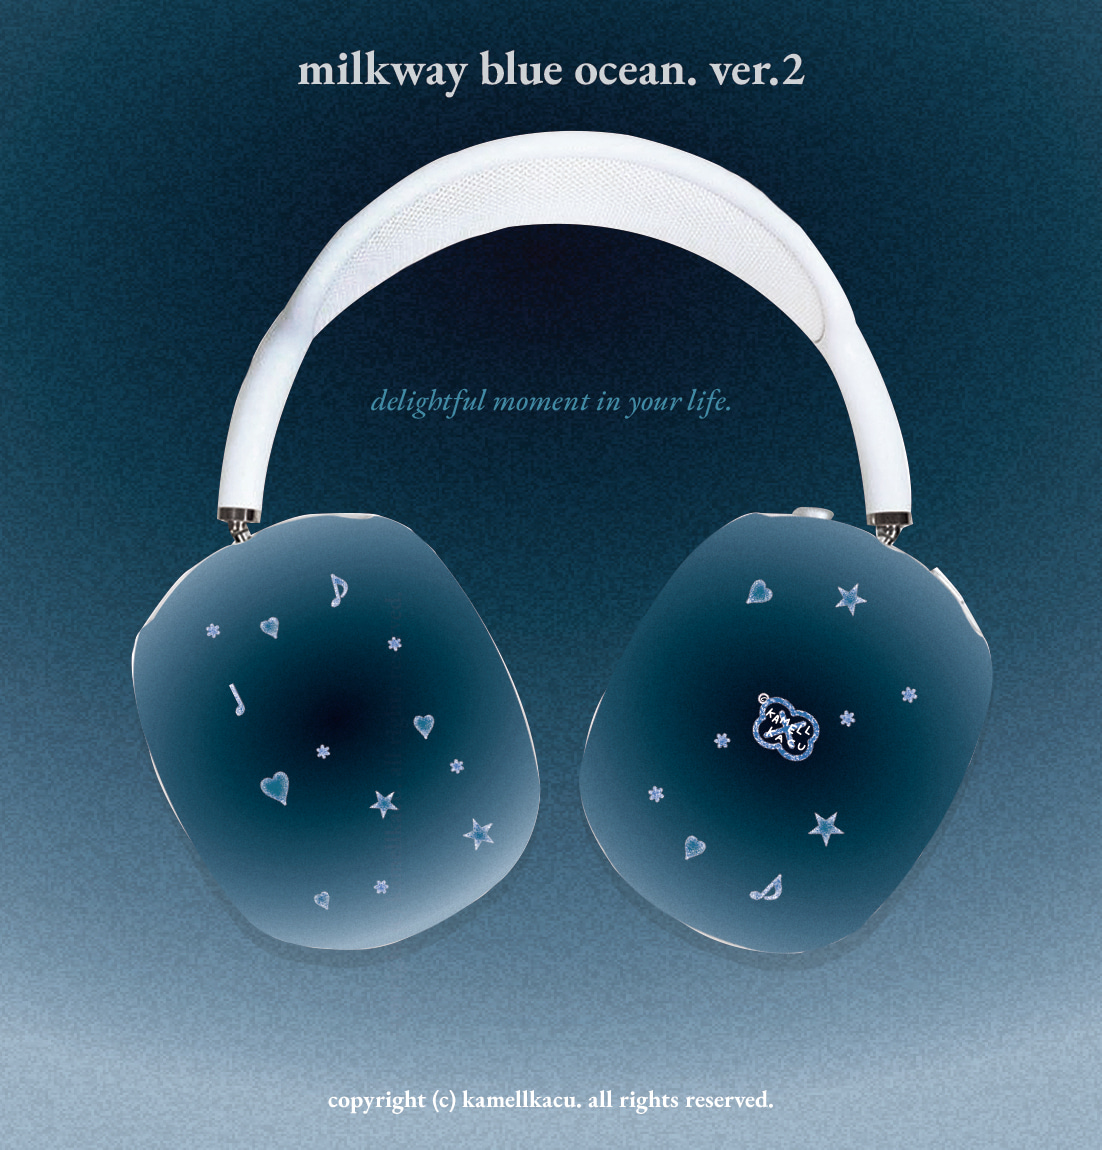 [에어팟맥스] milkway blue ocean. ver.2 airpods max hard case